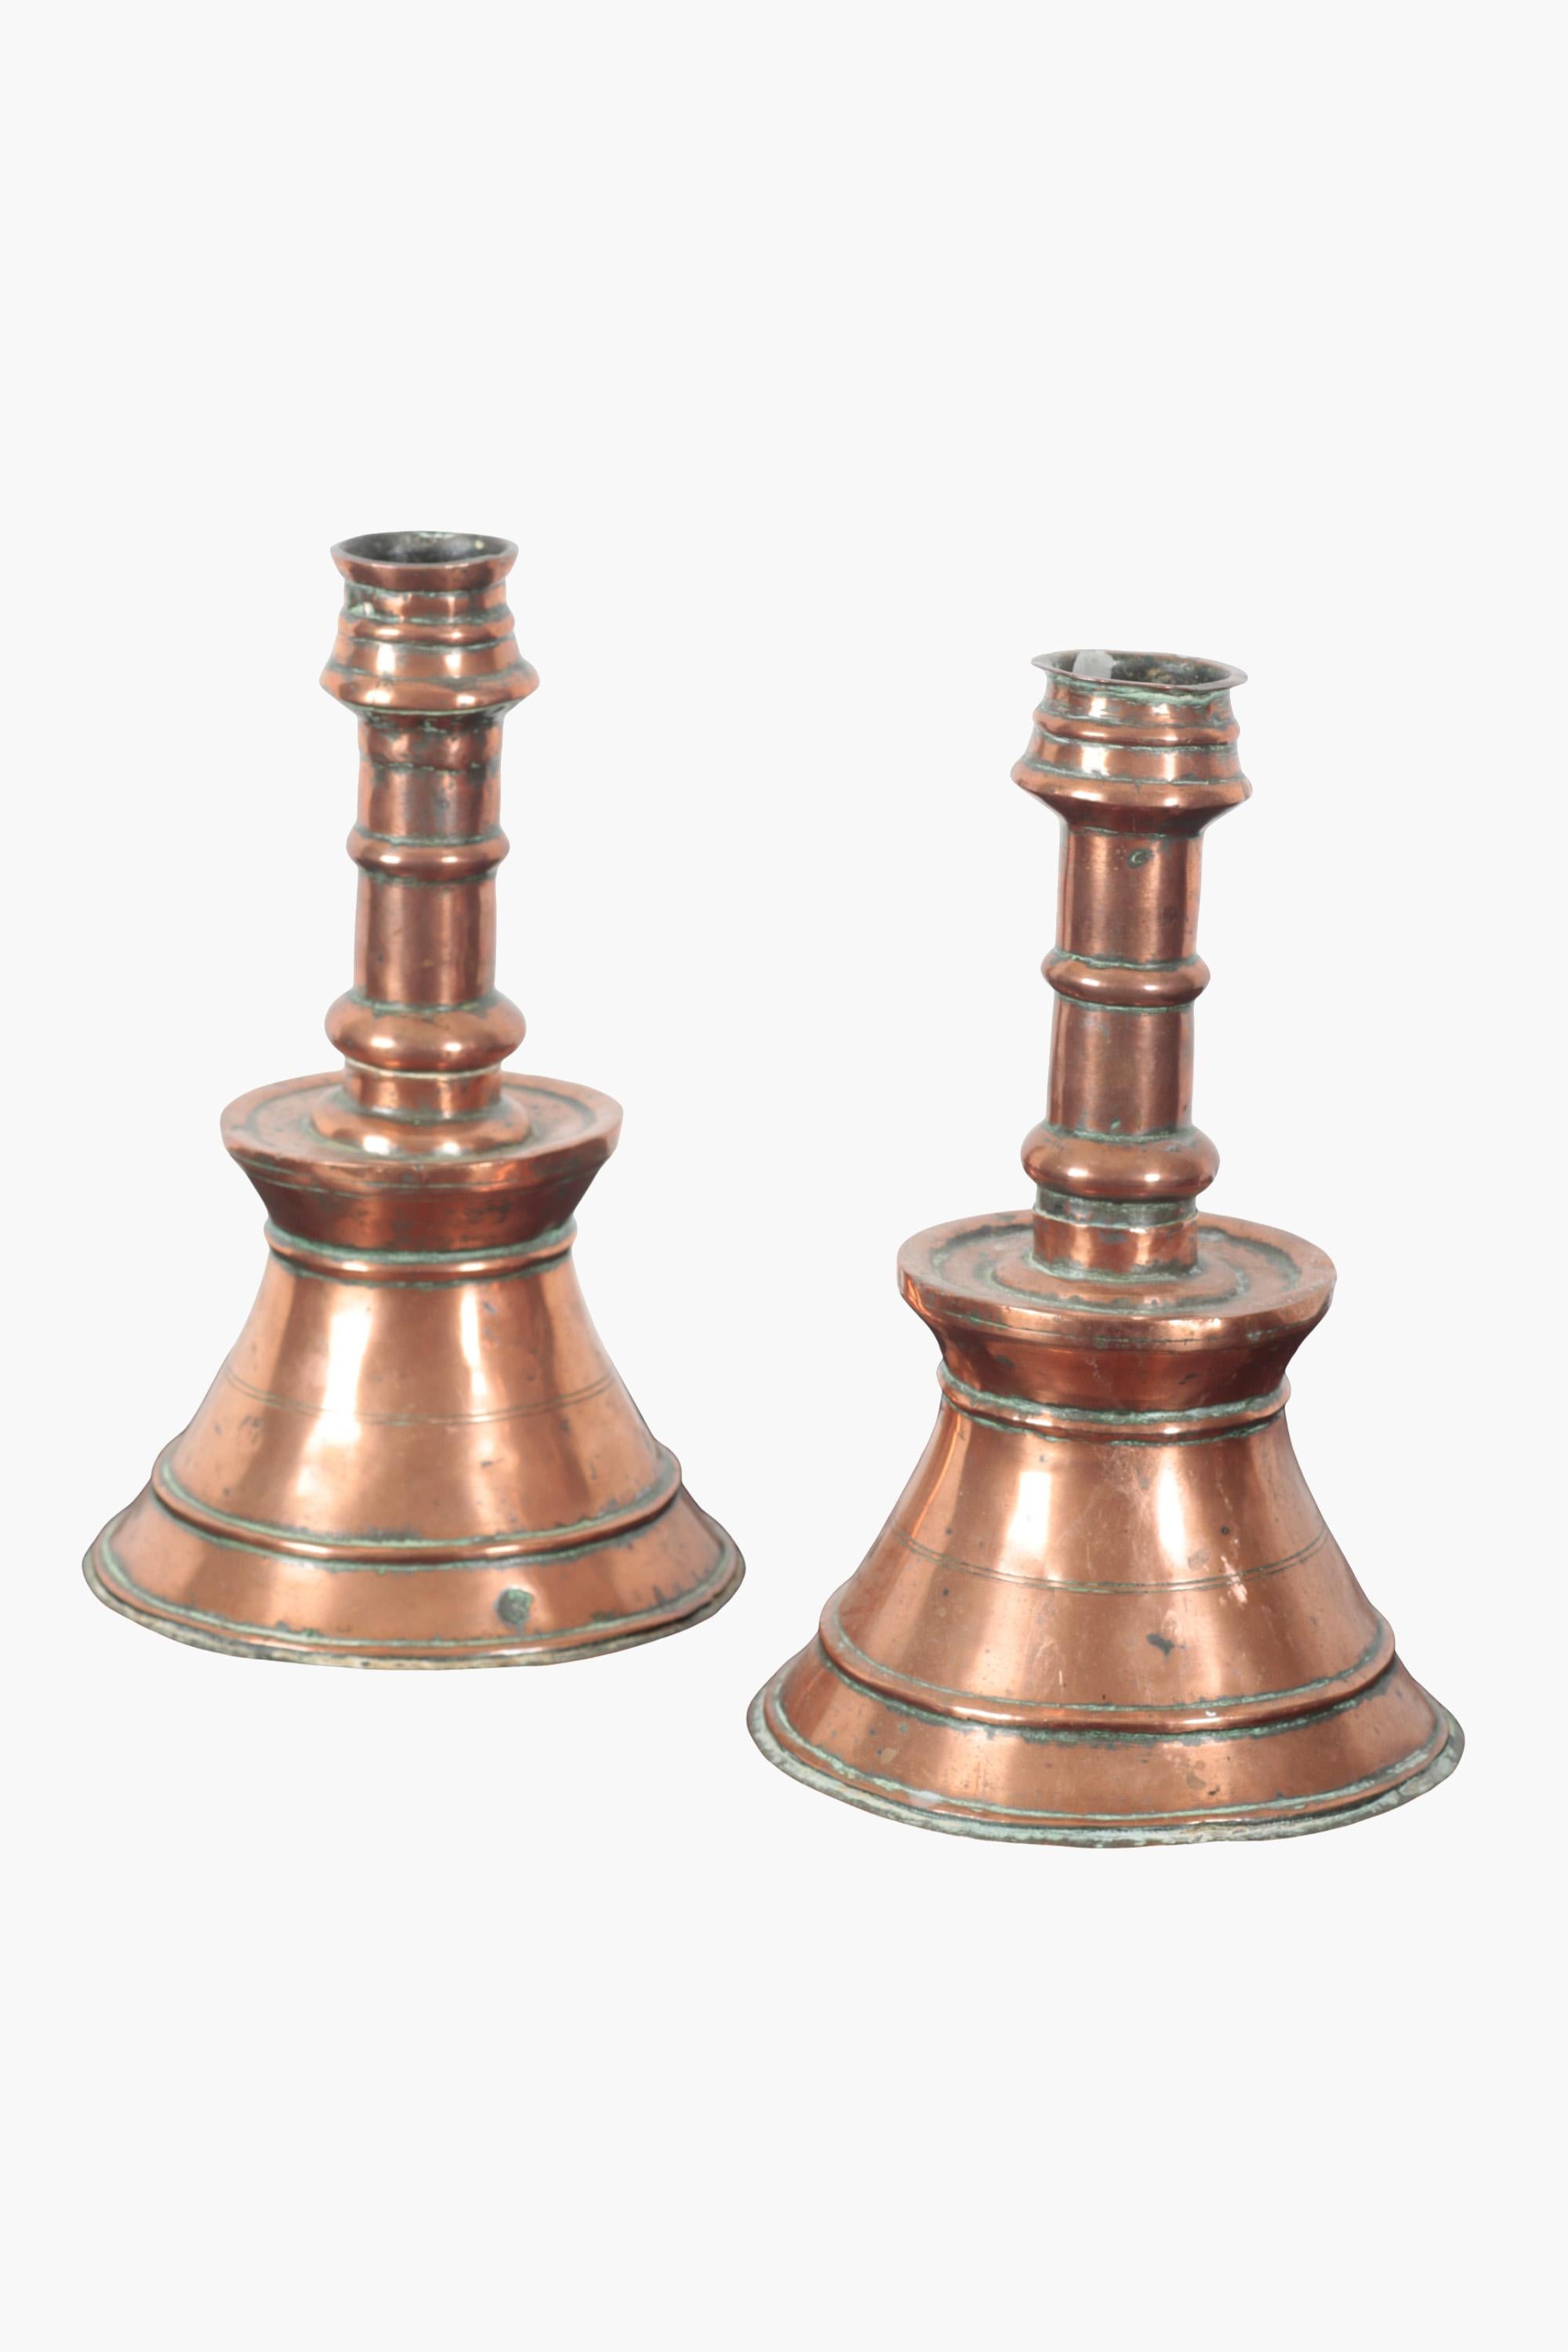 Zwei kupferne Kerzenhalter in typischer ottomanischer Form mit gedrechselten Stielen auf einem gestuften und verjüngten Sockel. Jeder Sockel erhebt sich zu einer aufgeweiteten Bobèche (einer Auffangschale für geschmolzenes Wachs).

Sie wurden im